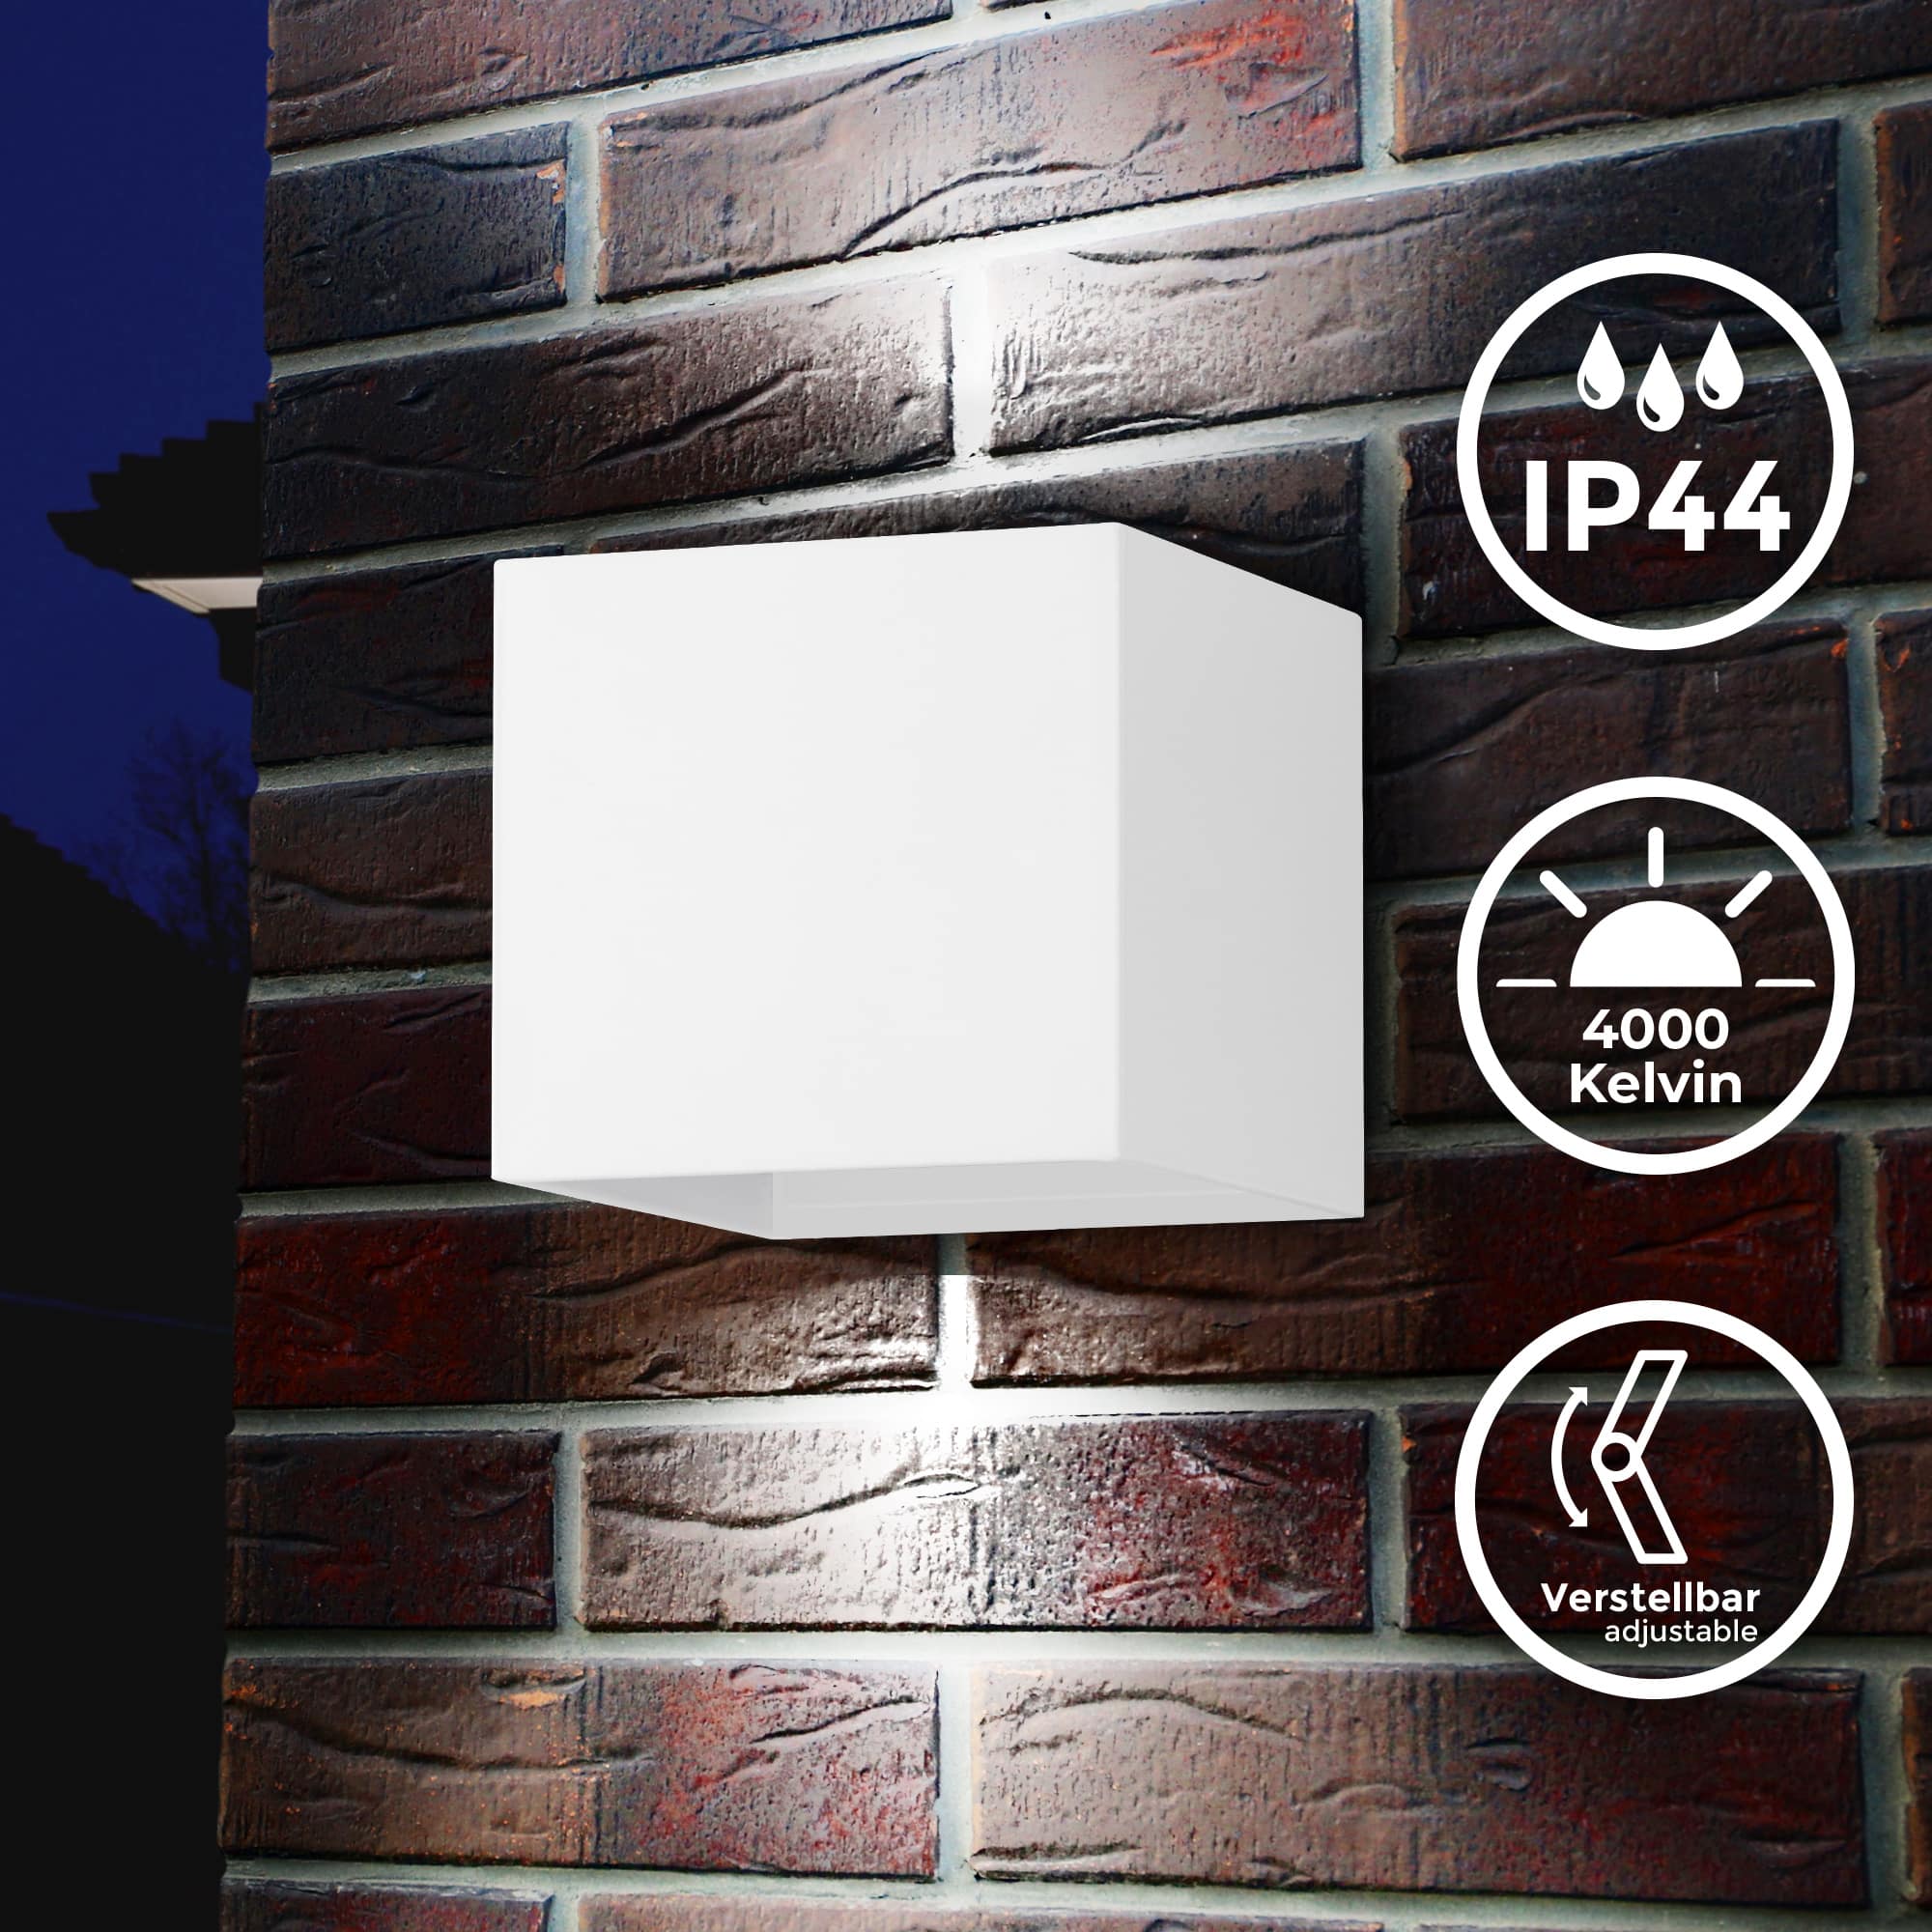 LED Wandleuchte Außen Up & Down - 11x10x10cm - Außenwandlampe eckig modern Fassade Mauer 2-flammig IP44 3W 300lm 4.000K neutralweiße Lichtfarbe I weiß - 2